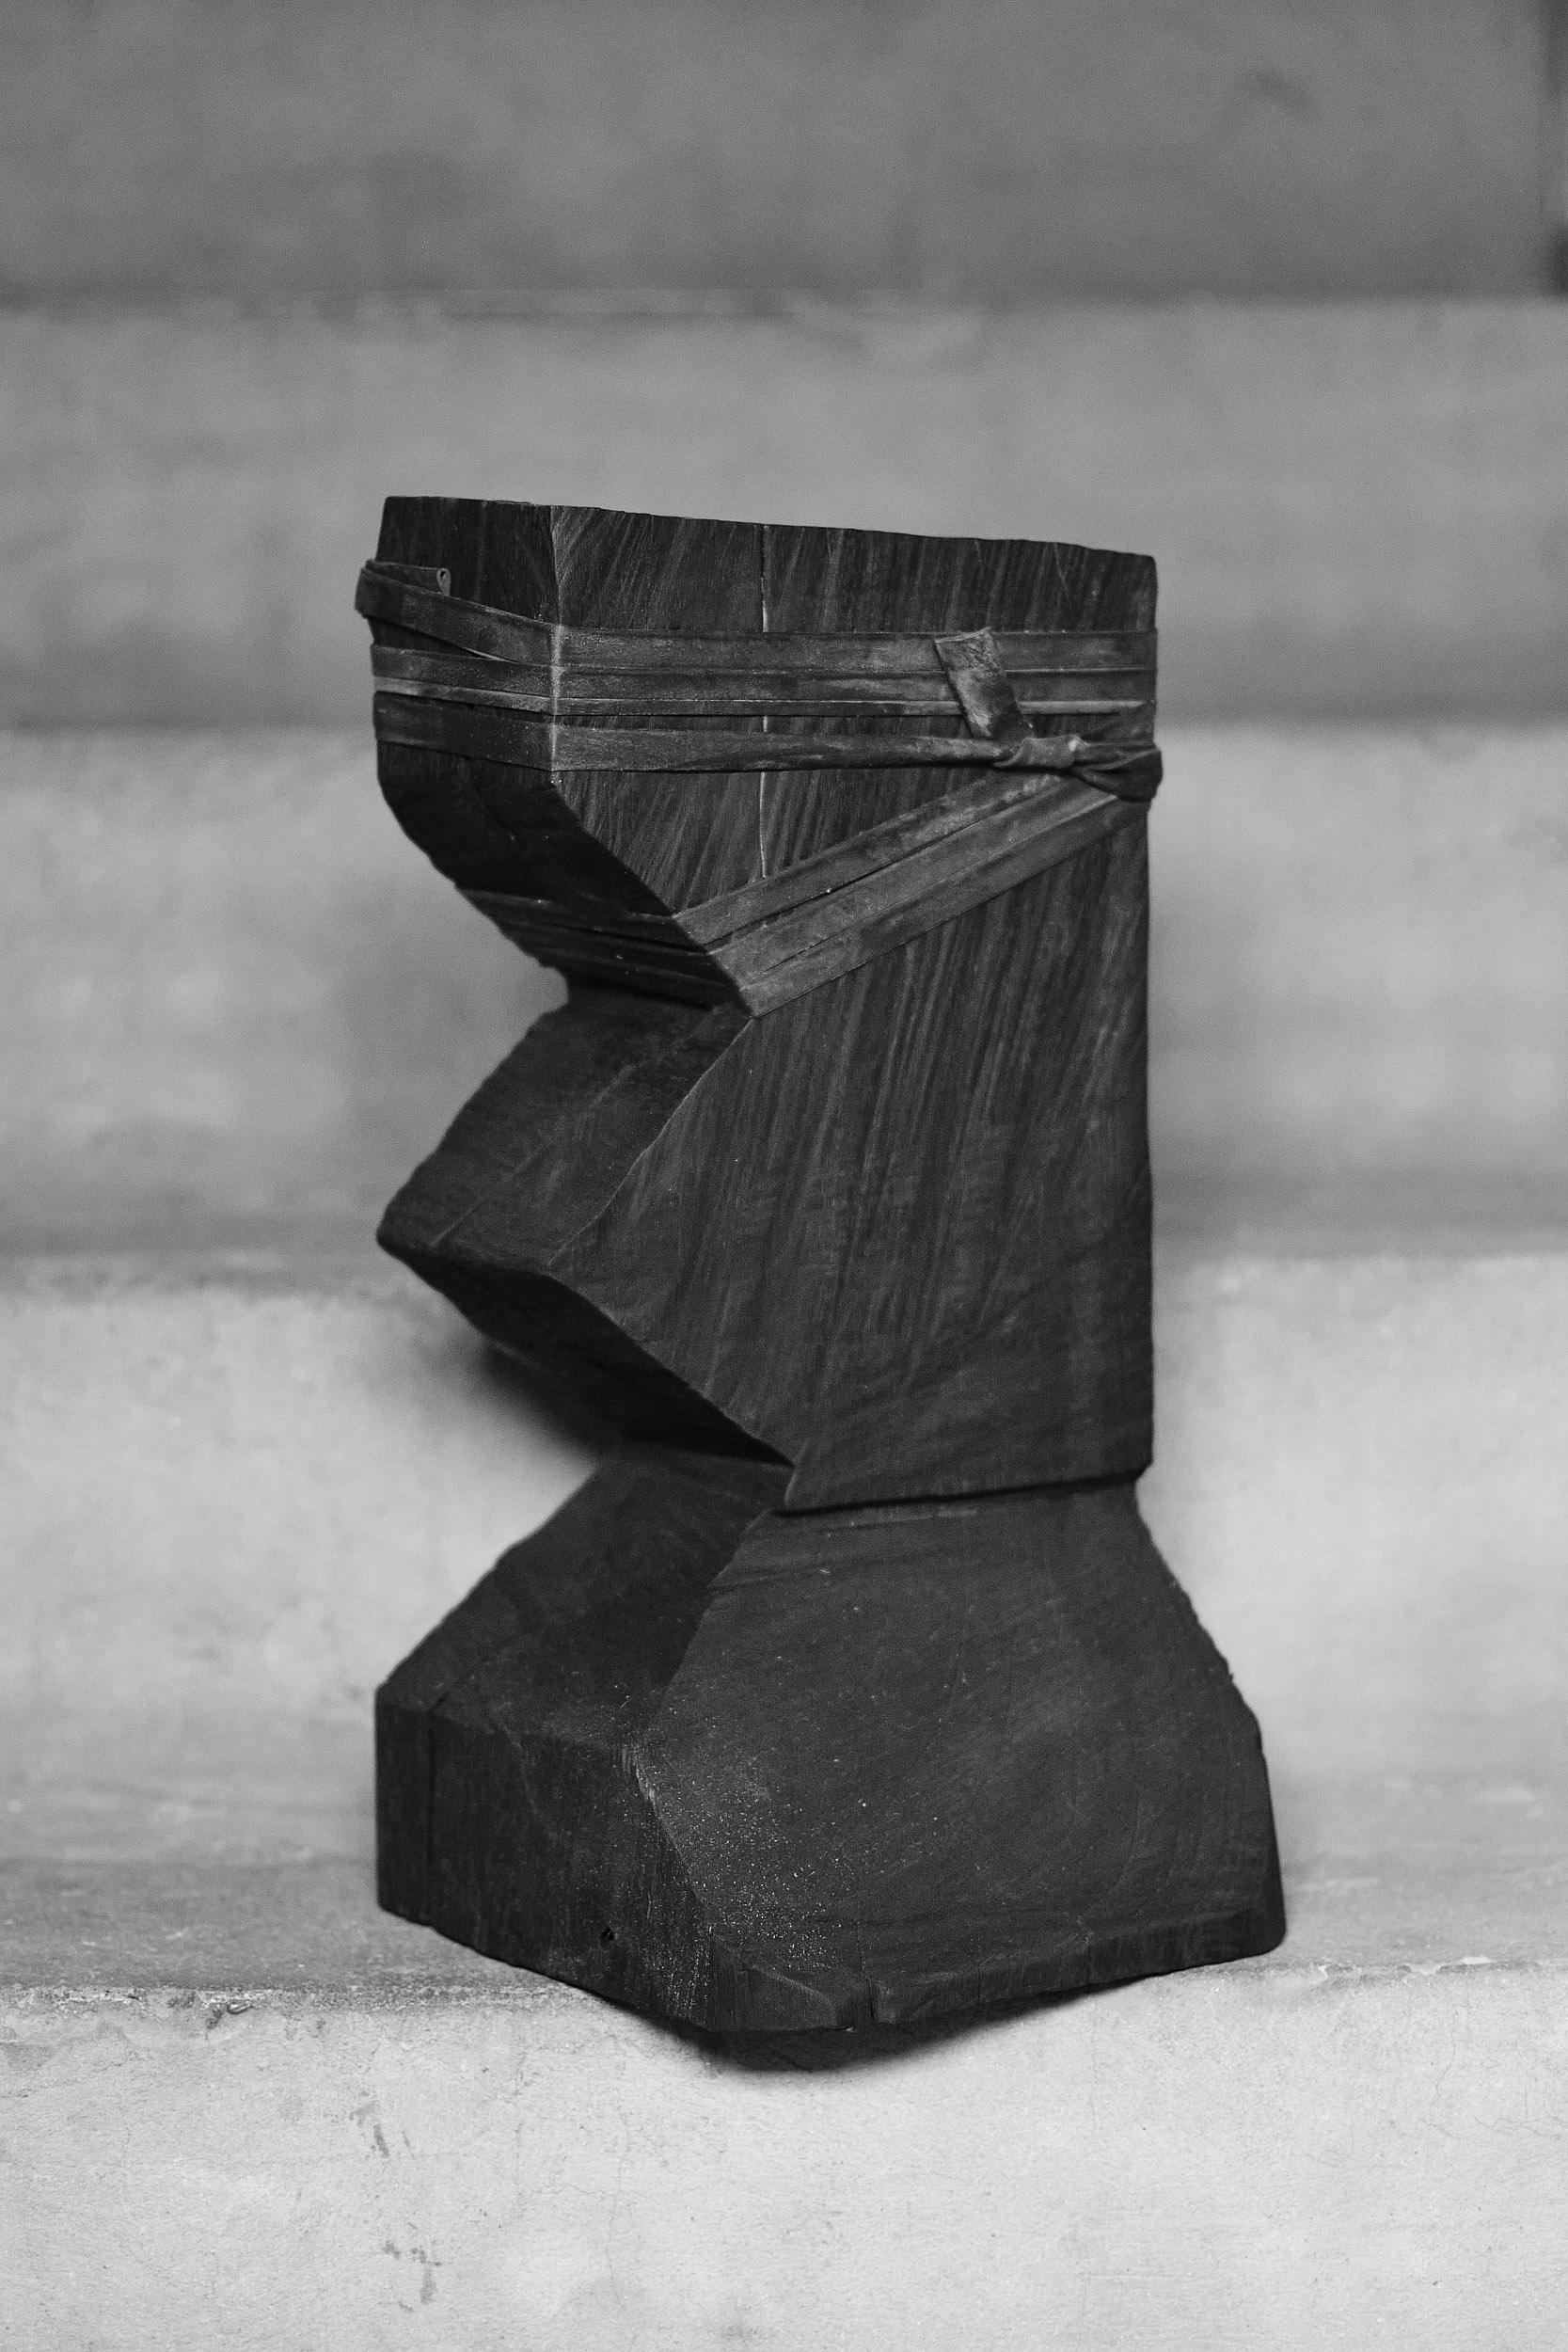 Tatam B par Camilo Andre Rodriguez Marquez

Sculpture en bois brûlé 
Dimensions : H. 35 x 25 x 25 cm : H. 35 x 25 x 25 cm

Camilo Andre Rodriguez Marquez est un designer d'origine colombienne, diplômé en design industriel en Colombie (FUAC) et au